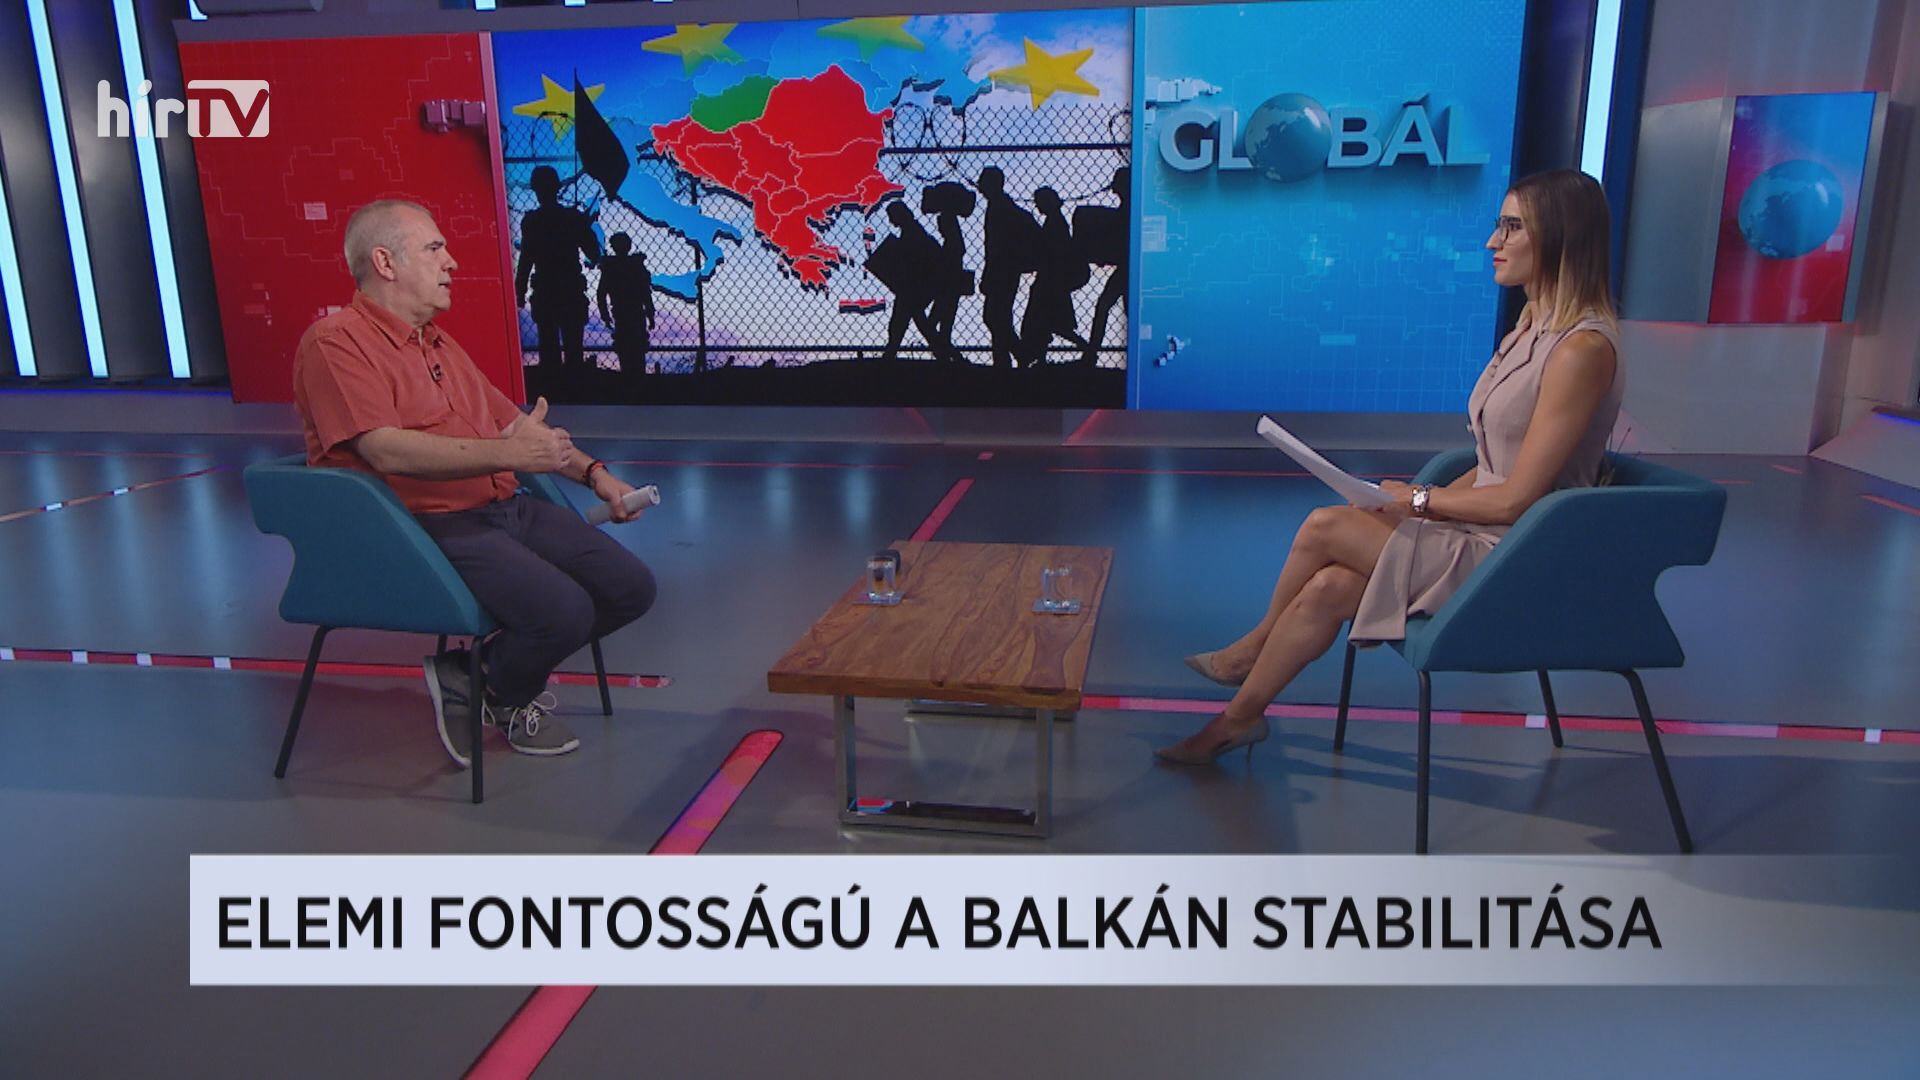 Globál: Elemi fontosságú a Balkán stabilitása